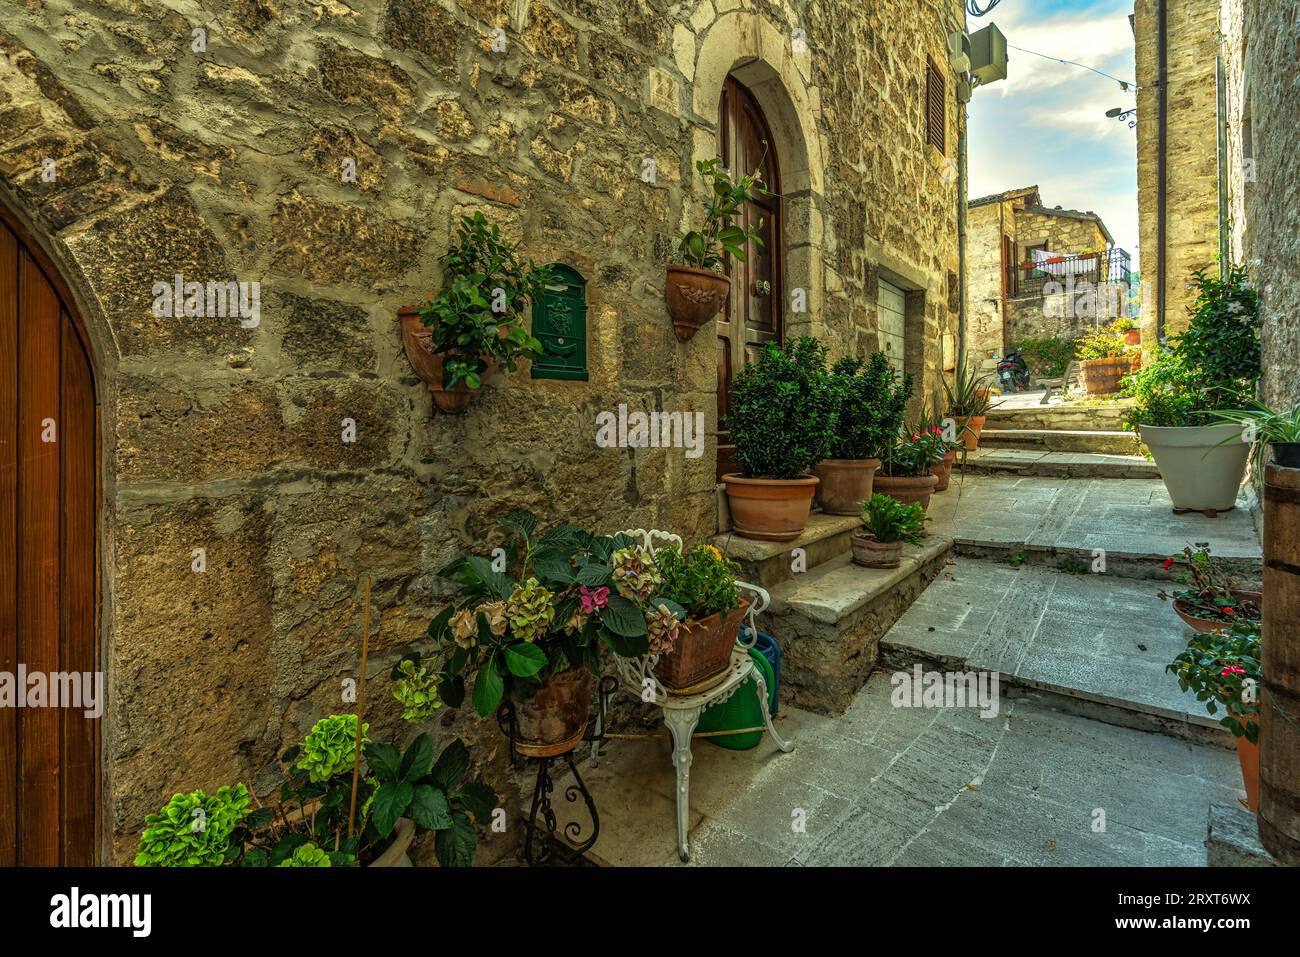 Gassen und Treppen zwischen Steinhäusern und bunten Blumenkästen im mittelalterlichen Dorf Castel Trosino. Ascoli Piceno, Region Marken, Italien, EU Stockfoto